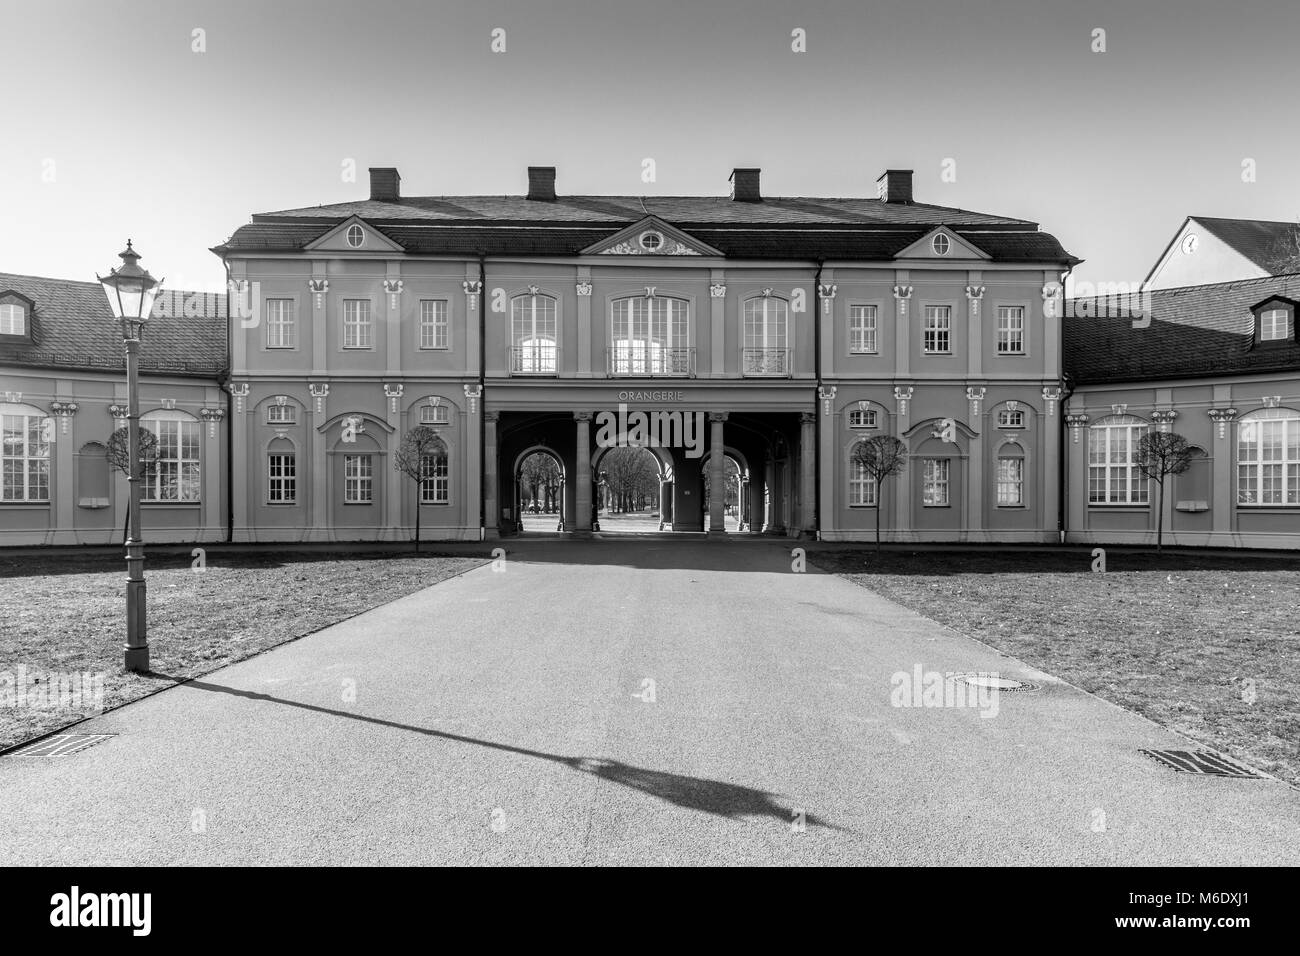 Gera, Allemagne - Mars 1,2018 : Vue de l'orangerie à Gera. Le bâtiment a été construit entre 1729 et 1932 et est aujourd'hui un lieu de rencontre populaire pour loca Banque D'Images